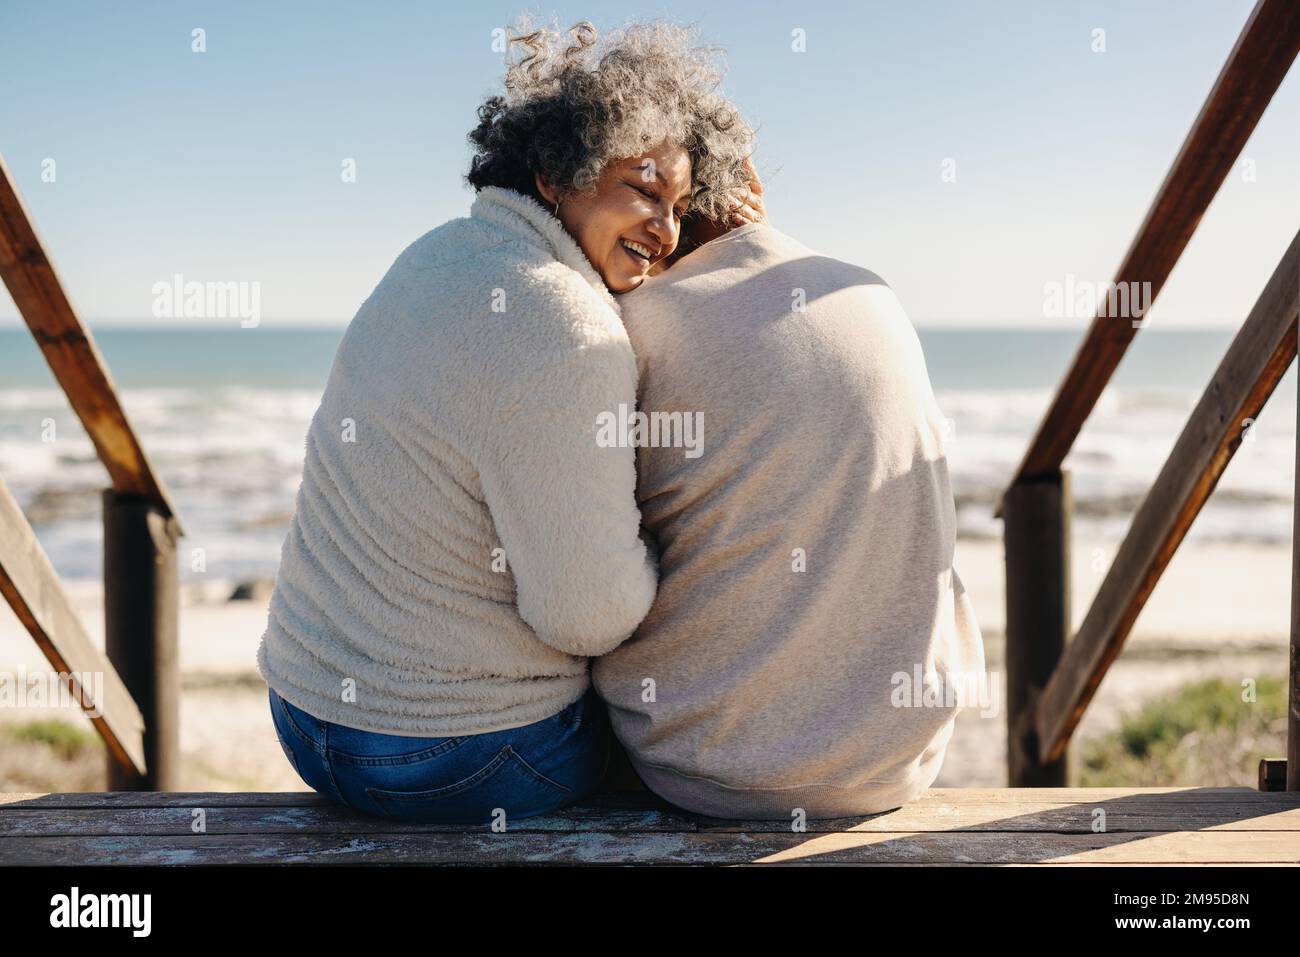 Rückblick auf eine glückliche ältere Frau, die fröhlich lächelt, während sie mit ihrem Mann vor dem Meer sitzt. Rentnerpaar, das Qualität verbringt Stockfoto